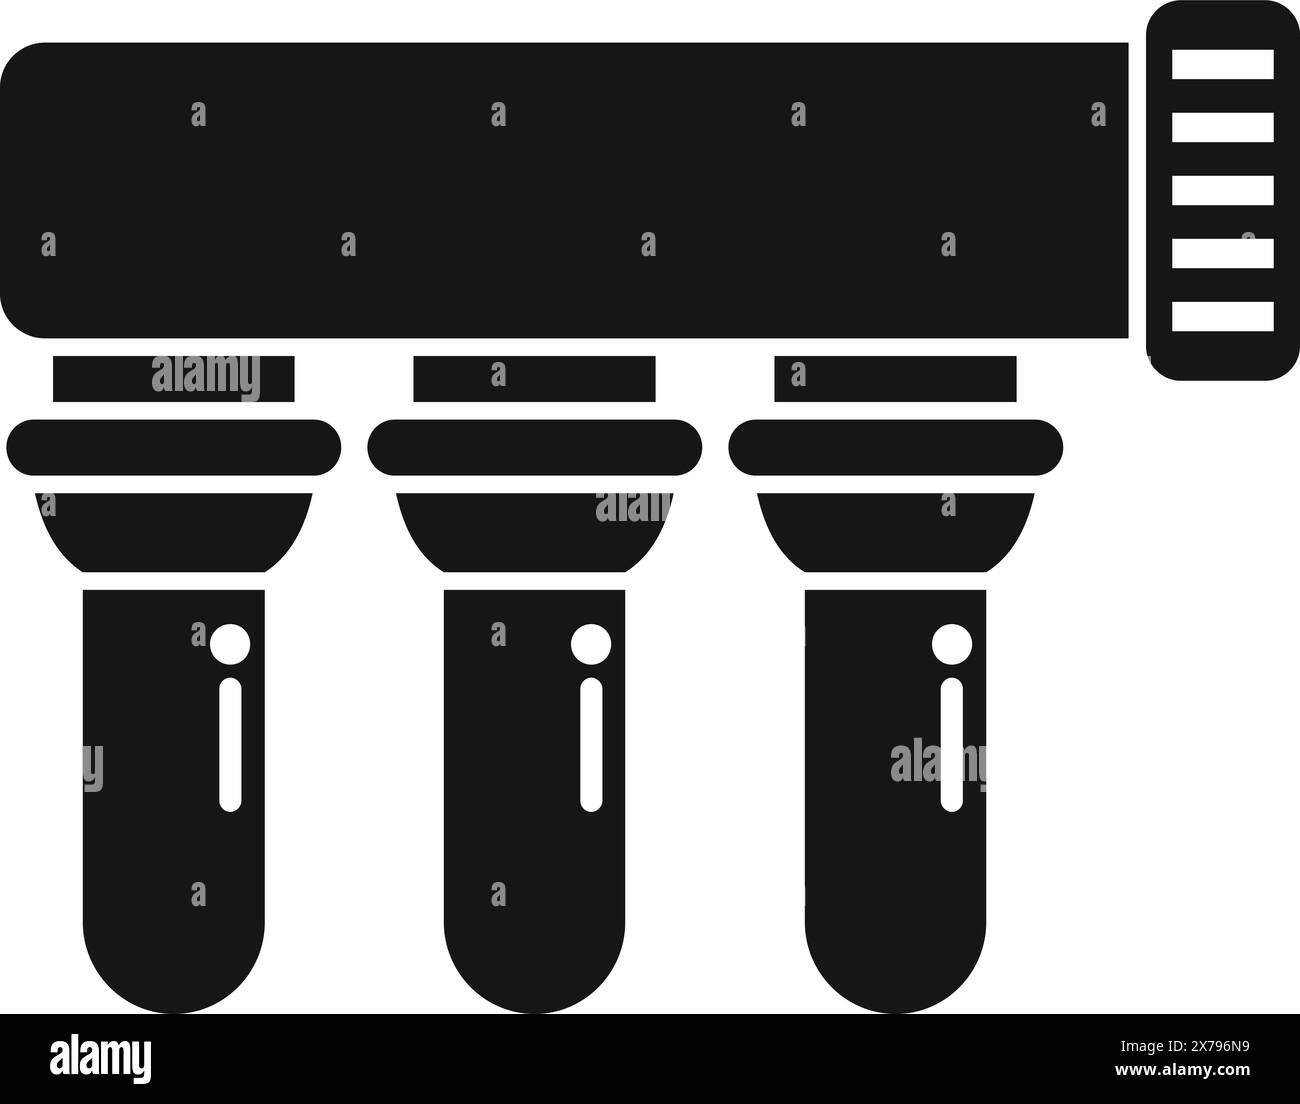 Icona vettoriale che presenta tre filtri dell'acqua con indicatore di misurazione, in bianco e nero Illustrazione Vettoriale